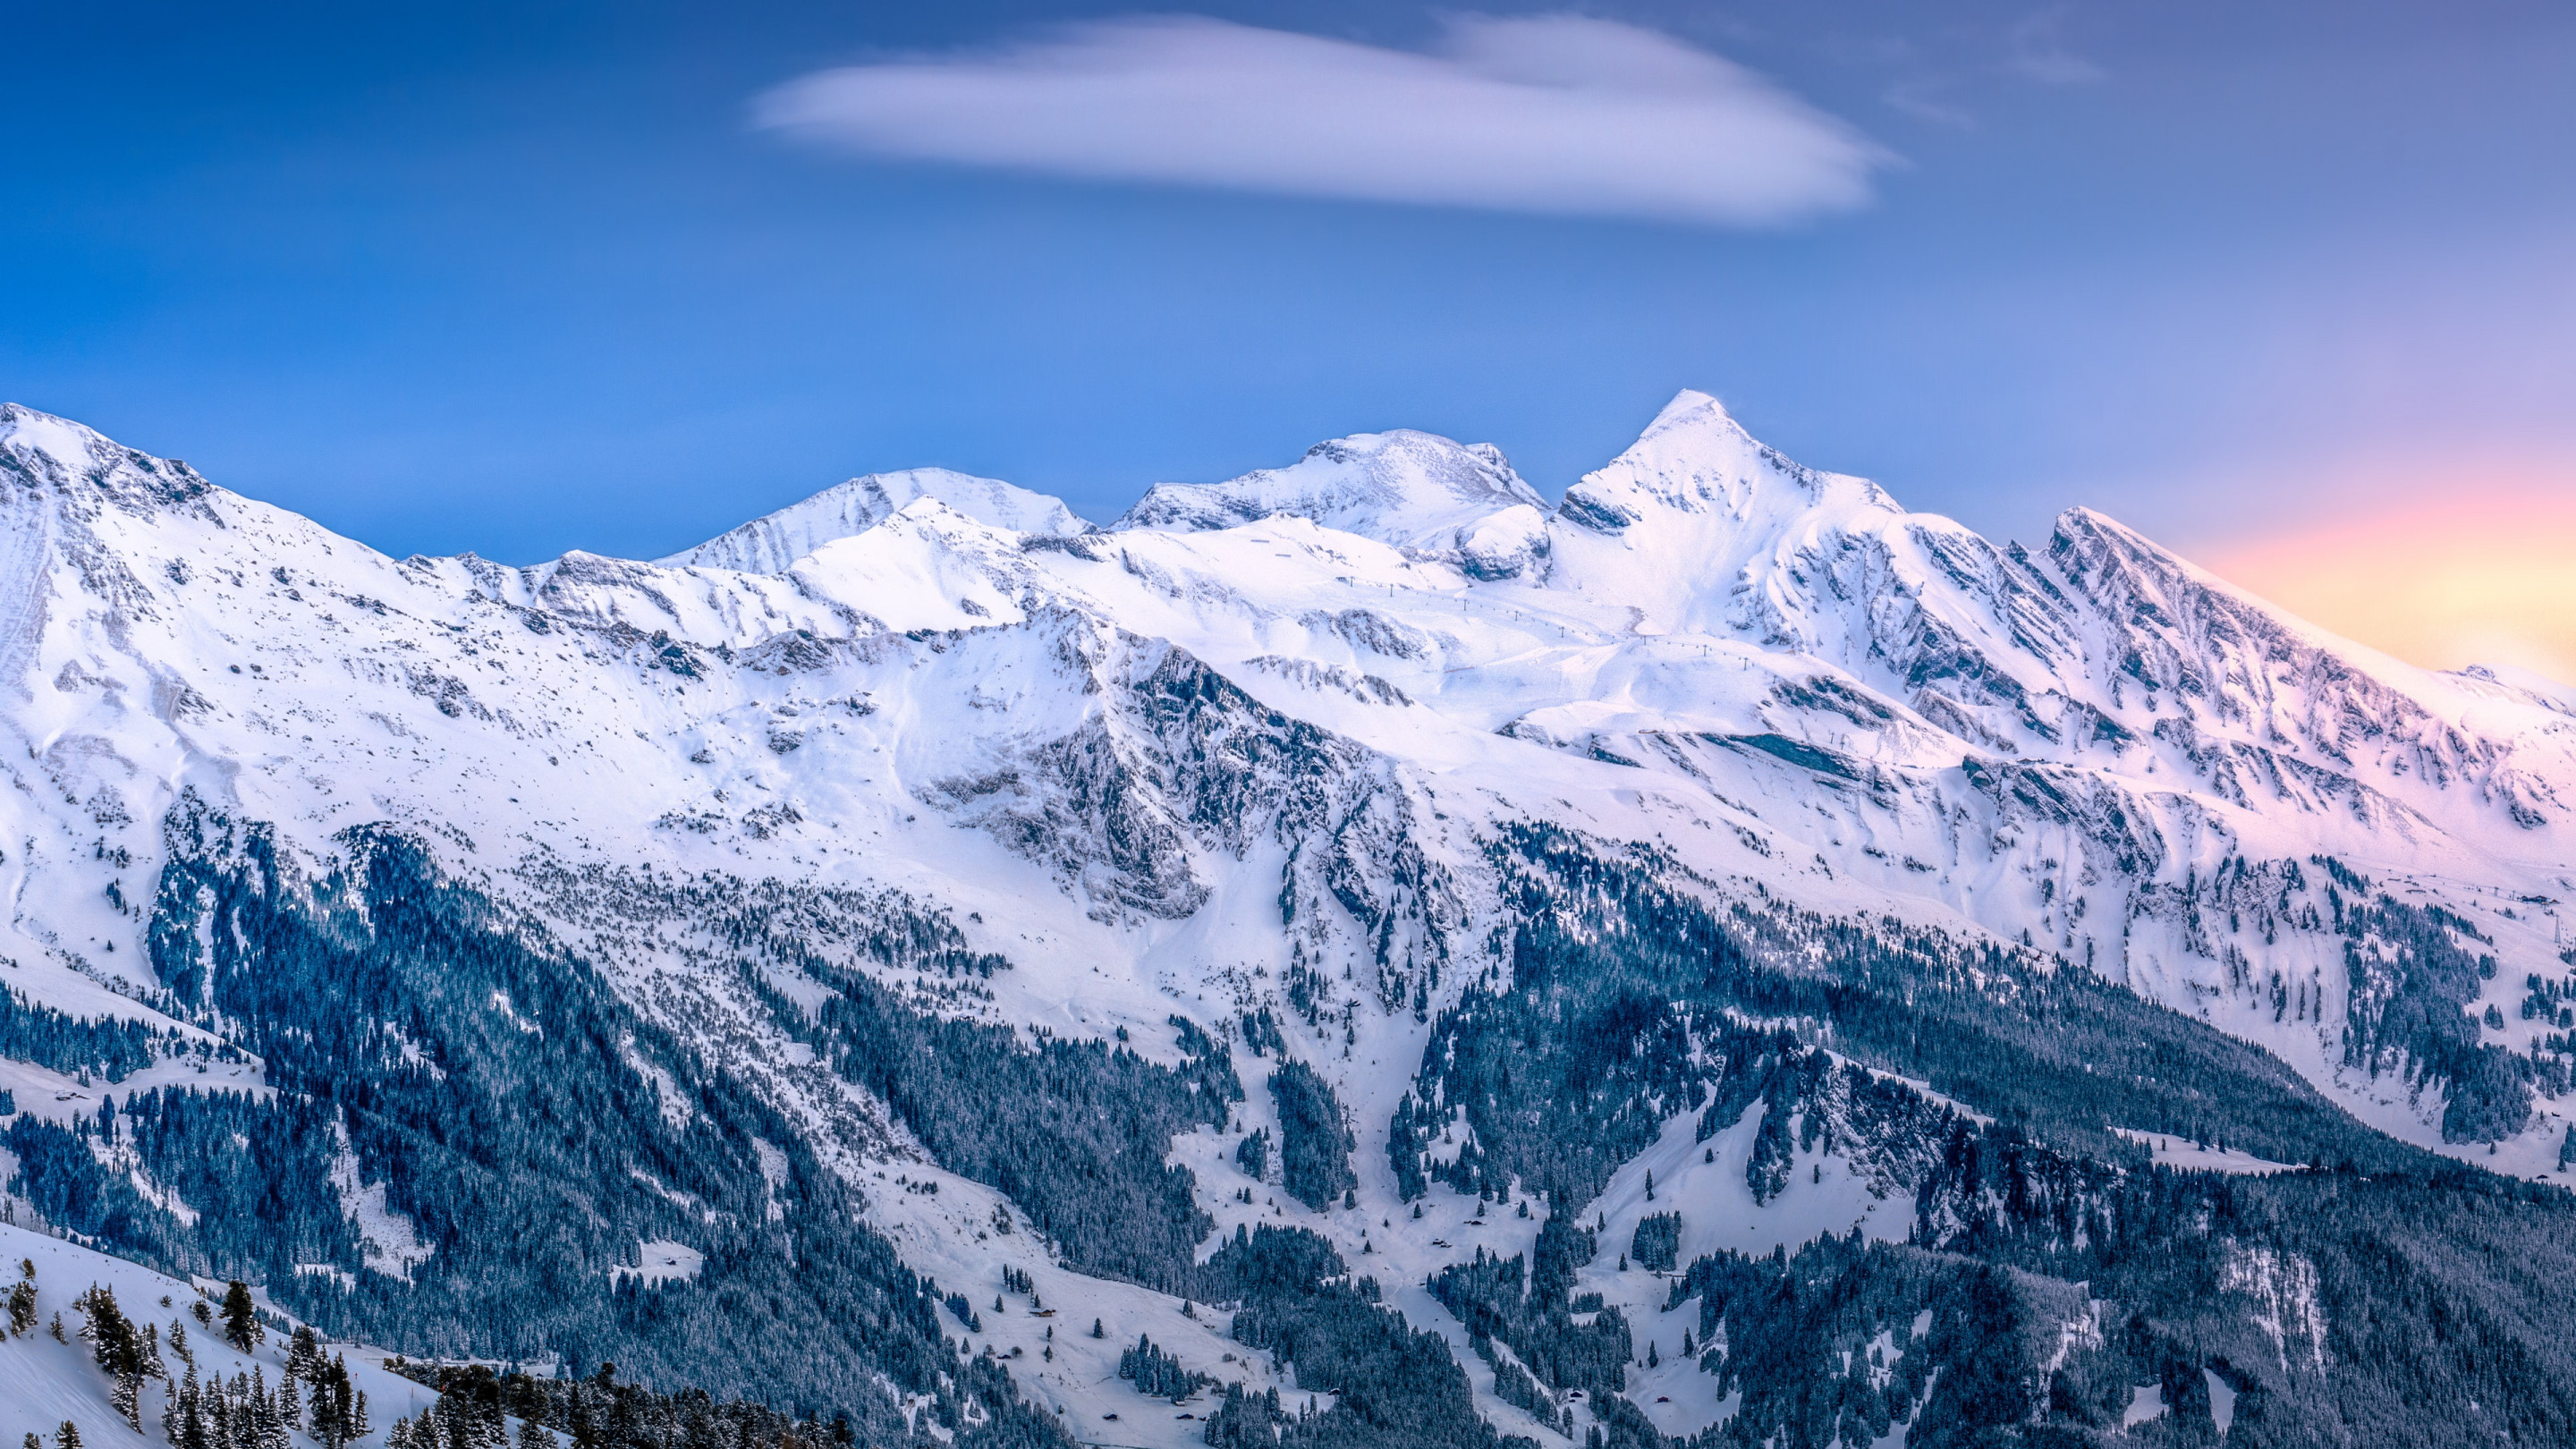 Alpine scenery from Kleine Scheidegg, Switzerland wallpaper 2880x1620